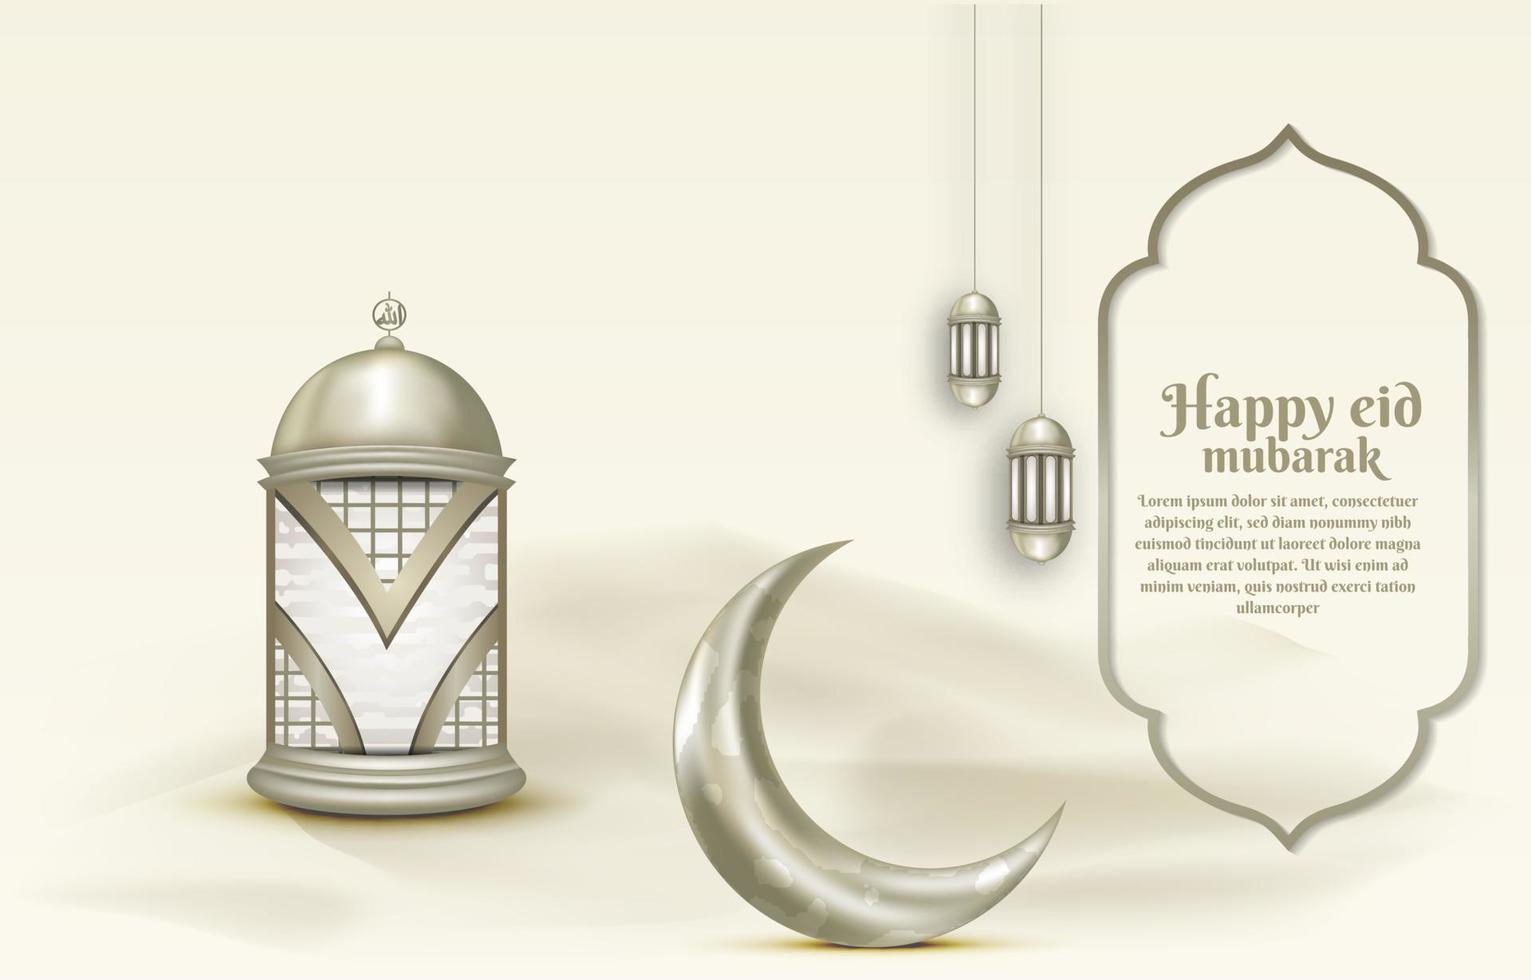 islamisk hälsning eid mubarak kortmall, bakgrund med lykta och halvmåne vektor